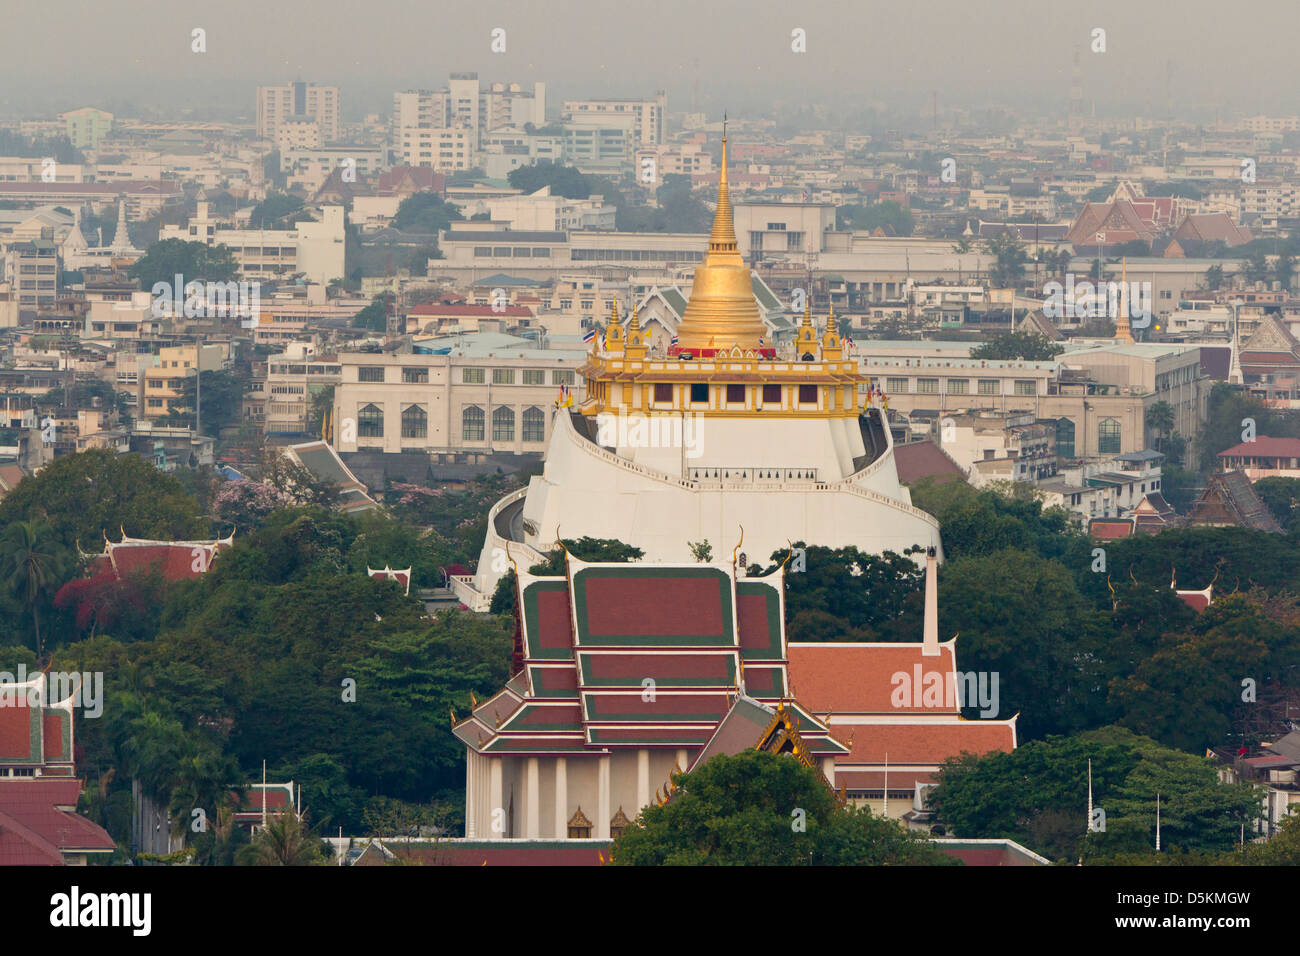 Wat Saket, popularmente conocido como el Monte Dorado o â€˜Phu Khao Thongâ€™ es una pequeña colina coronada con un chedi de oro reluciente. Foto de stock